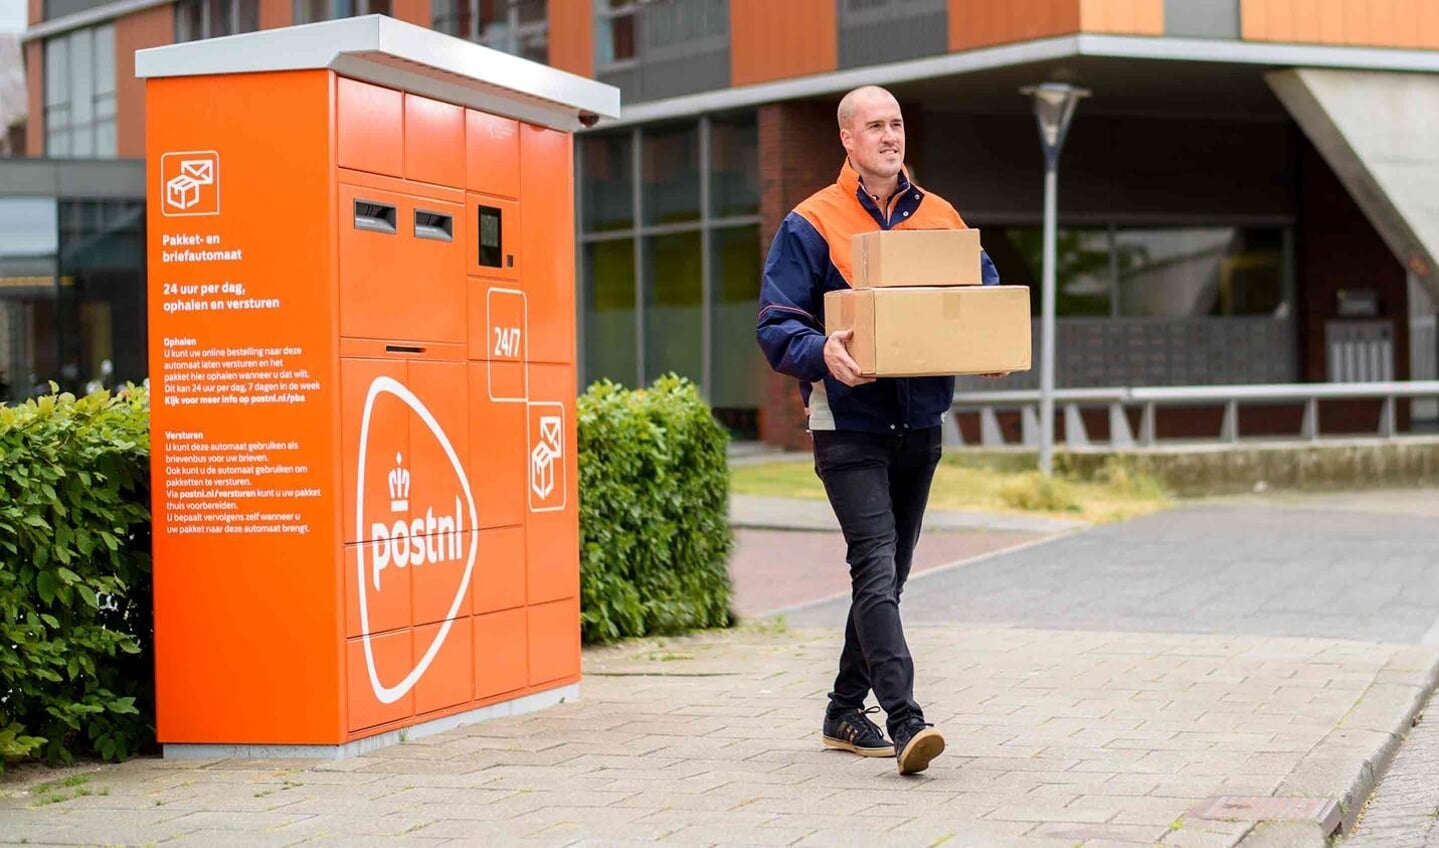 rabat For en dagstur farvel PostNL opent pakket- en briefautomaat bij tankstation - Weekblad voor Ouder  Amstel | Nieuws uit de regio Ouder Amstel